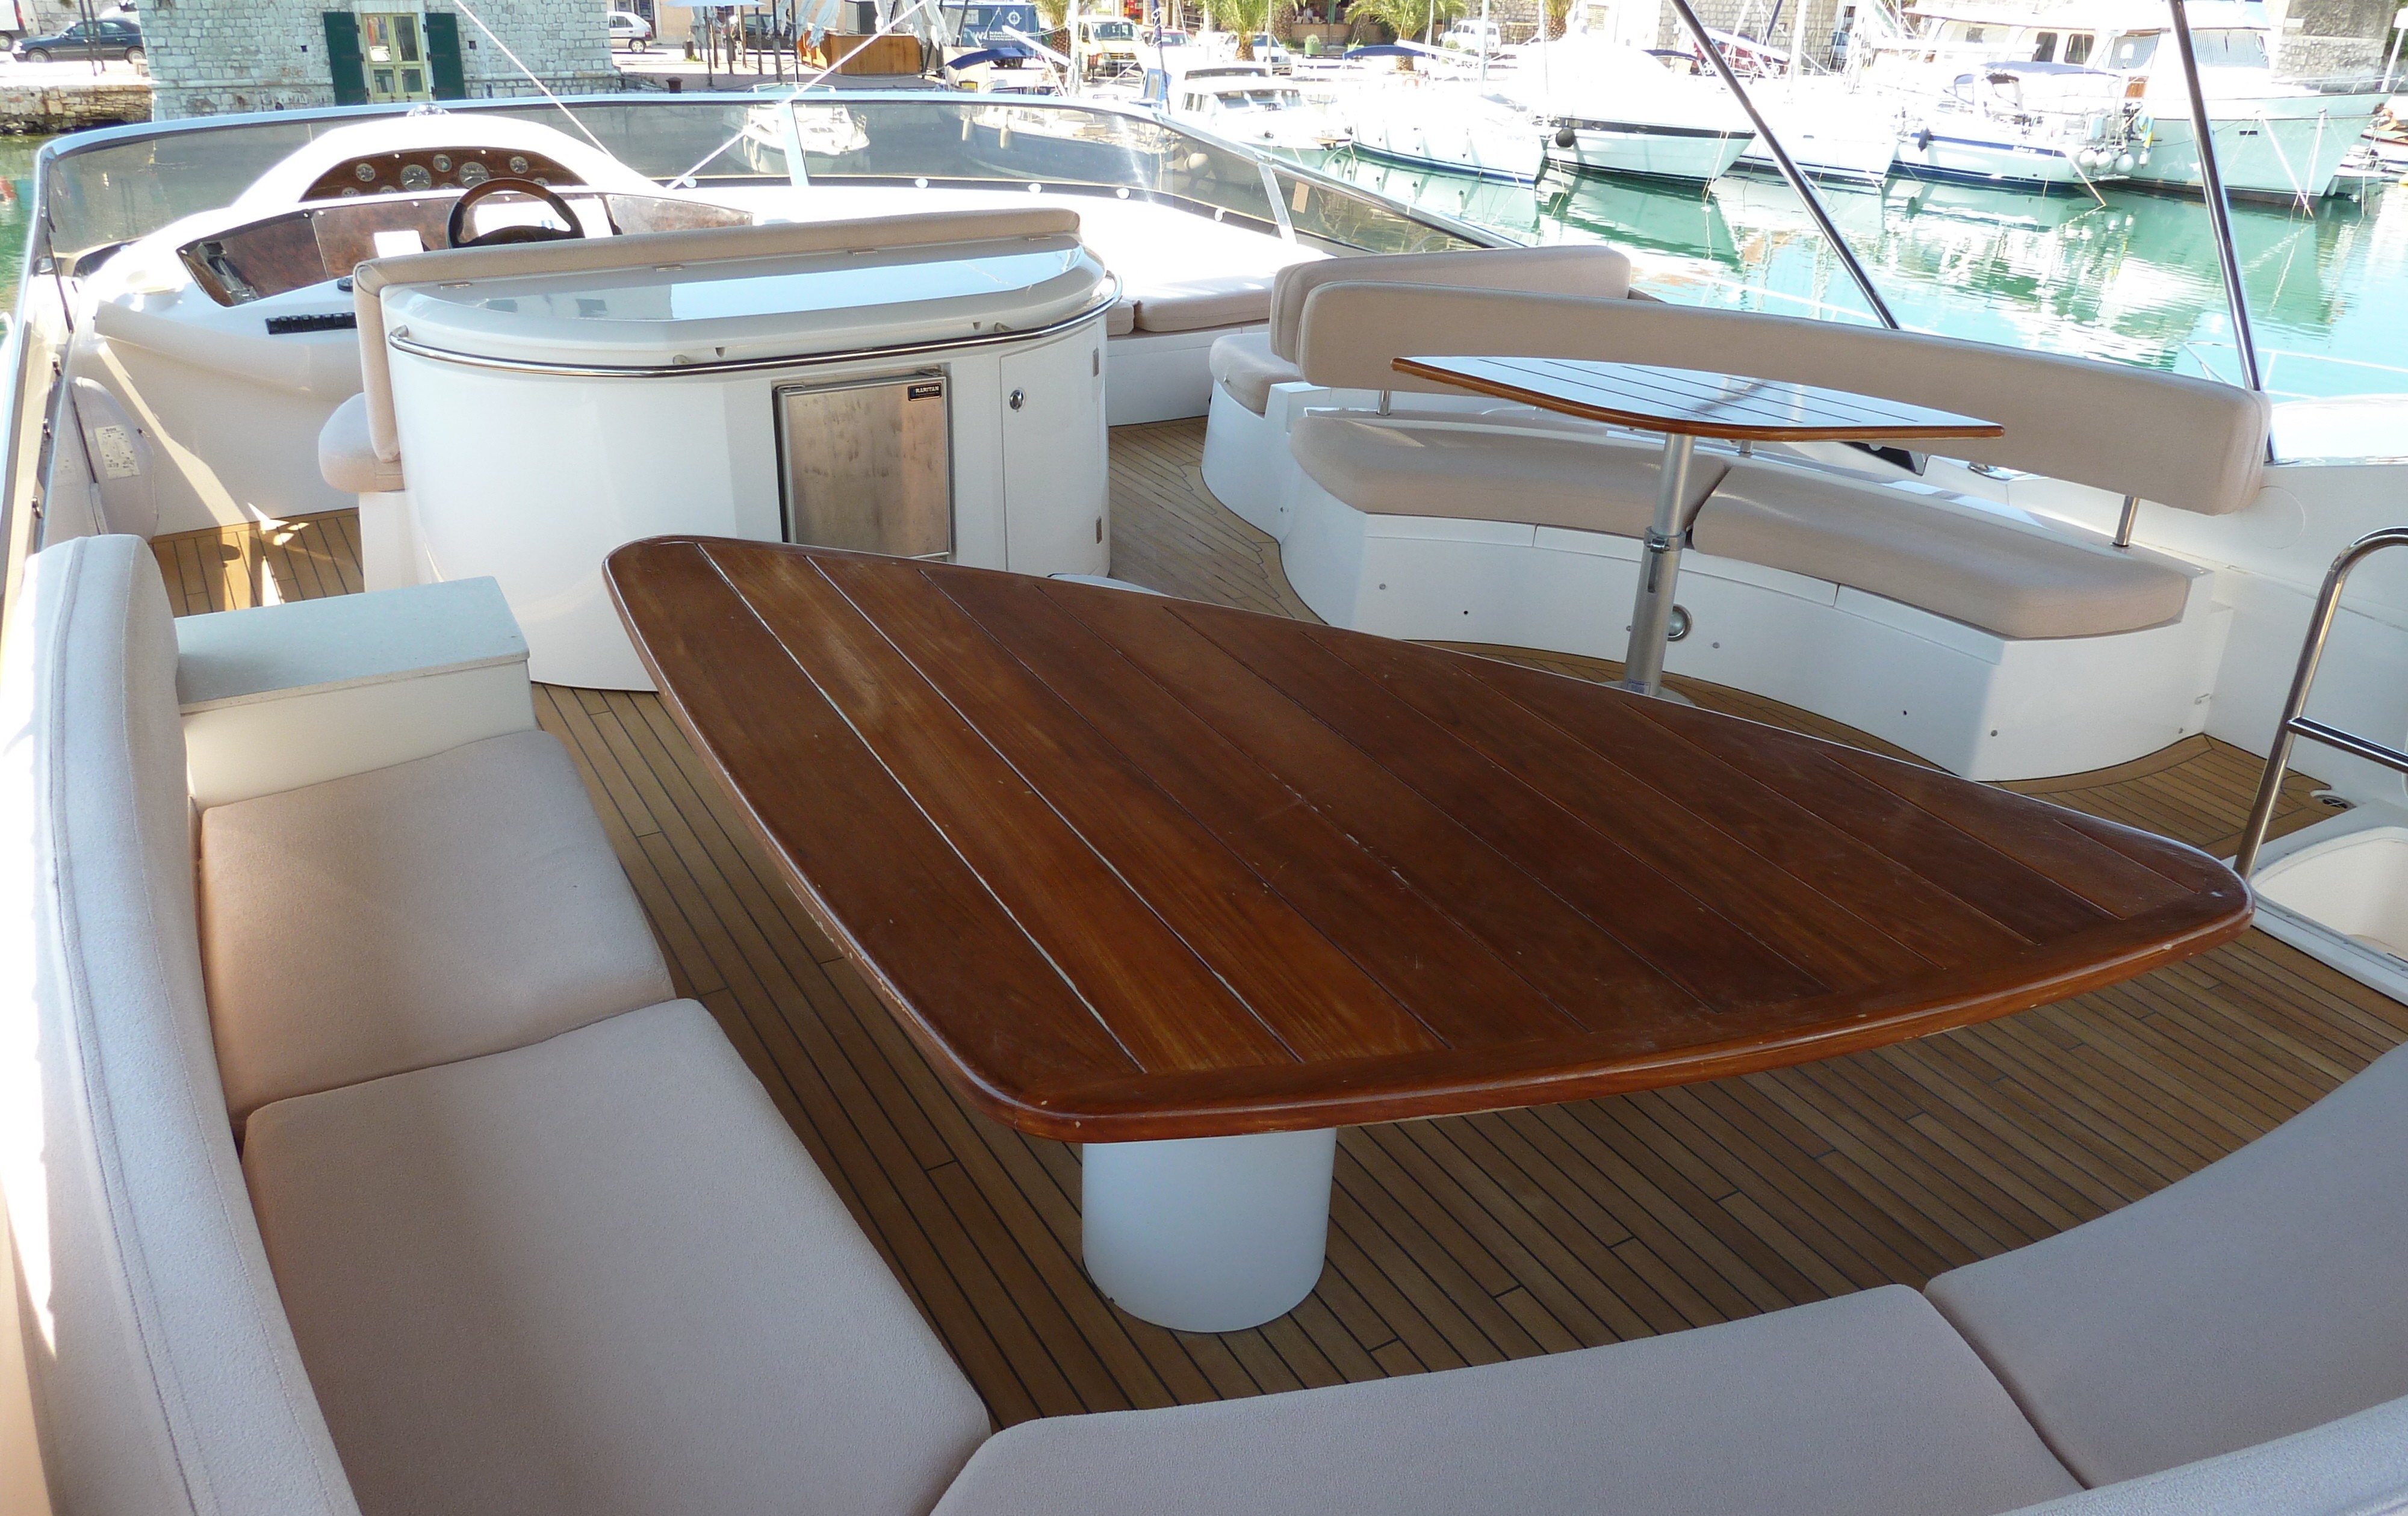 LUCKY BEAR Yacht Charter Details, Sunseeker 82 | CHARTERWORLD Luxury ...